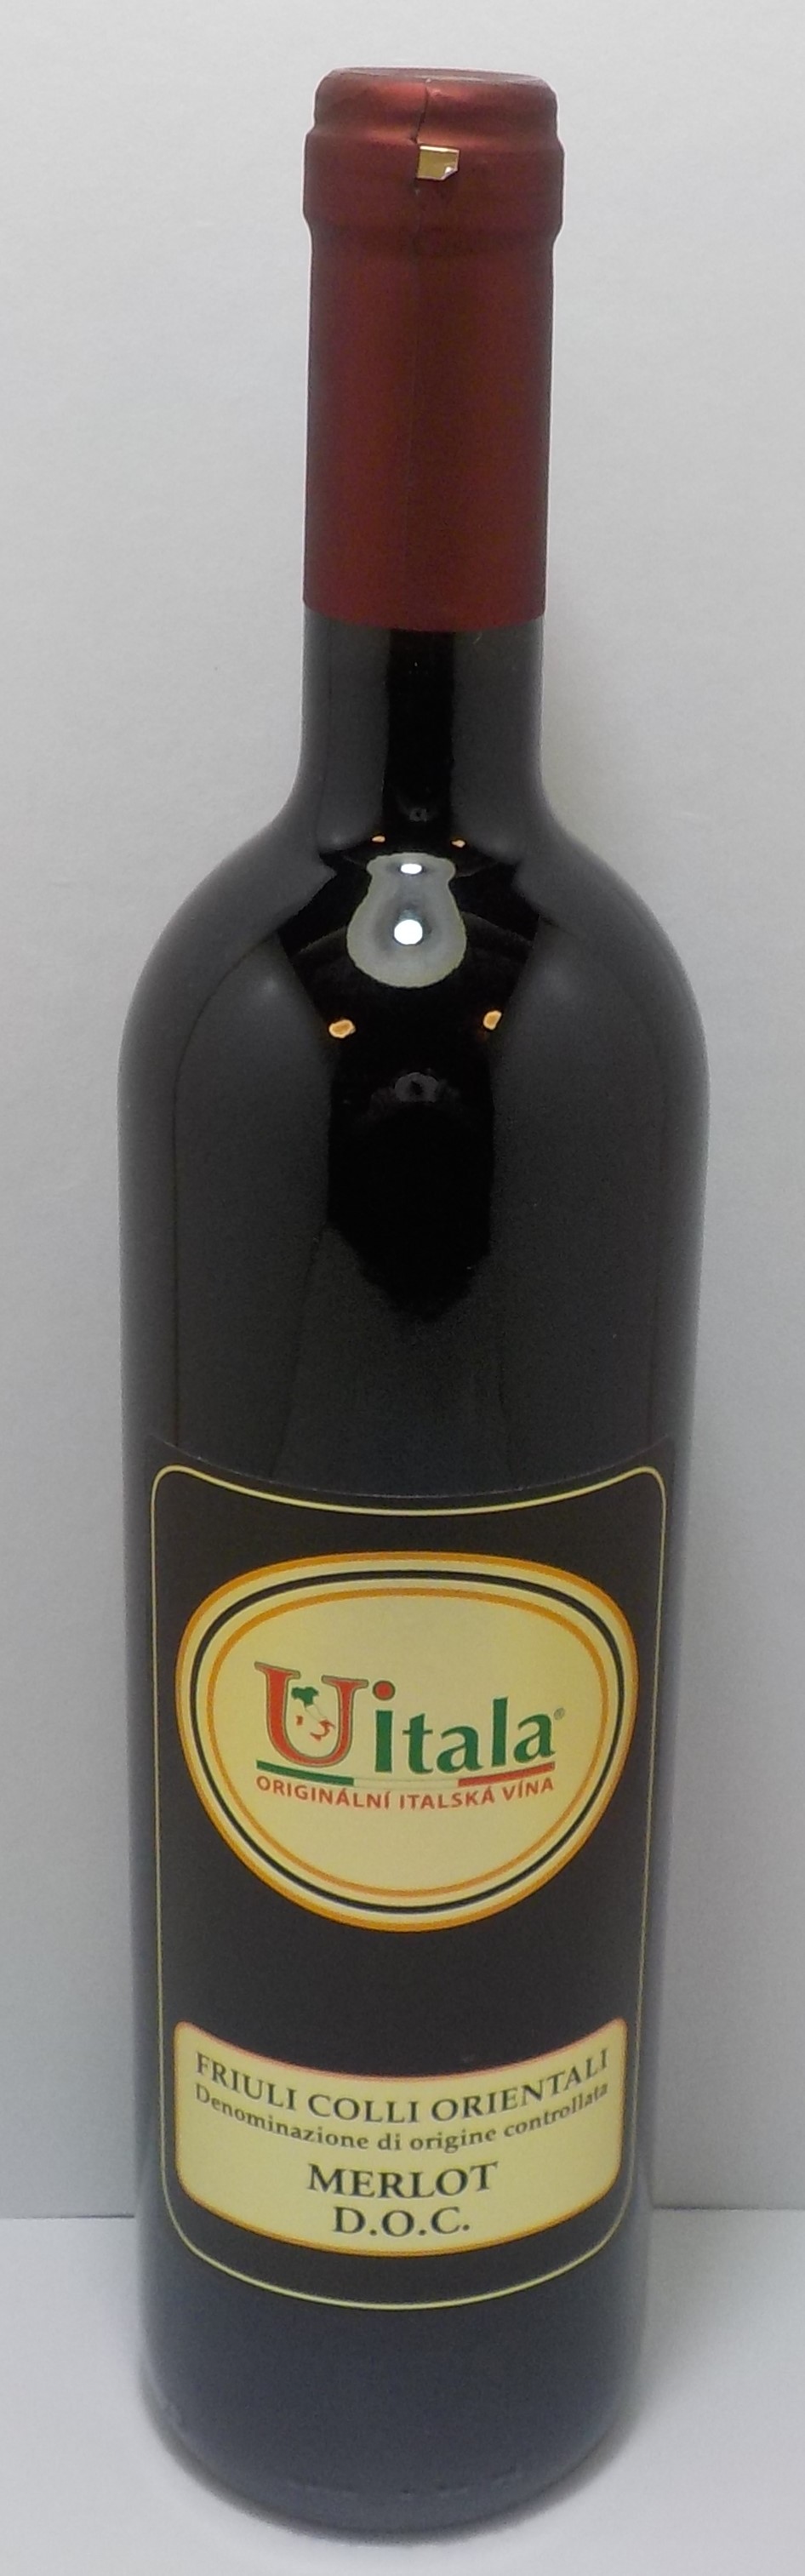 MERLOT D.O.C.Vino ,ROČNÍK 2021 červené víno, ZNAČKA U ITALA, 750ml,12,8 %alko